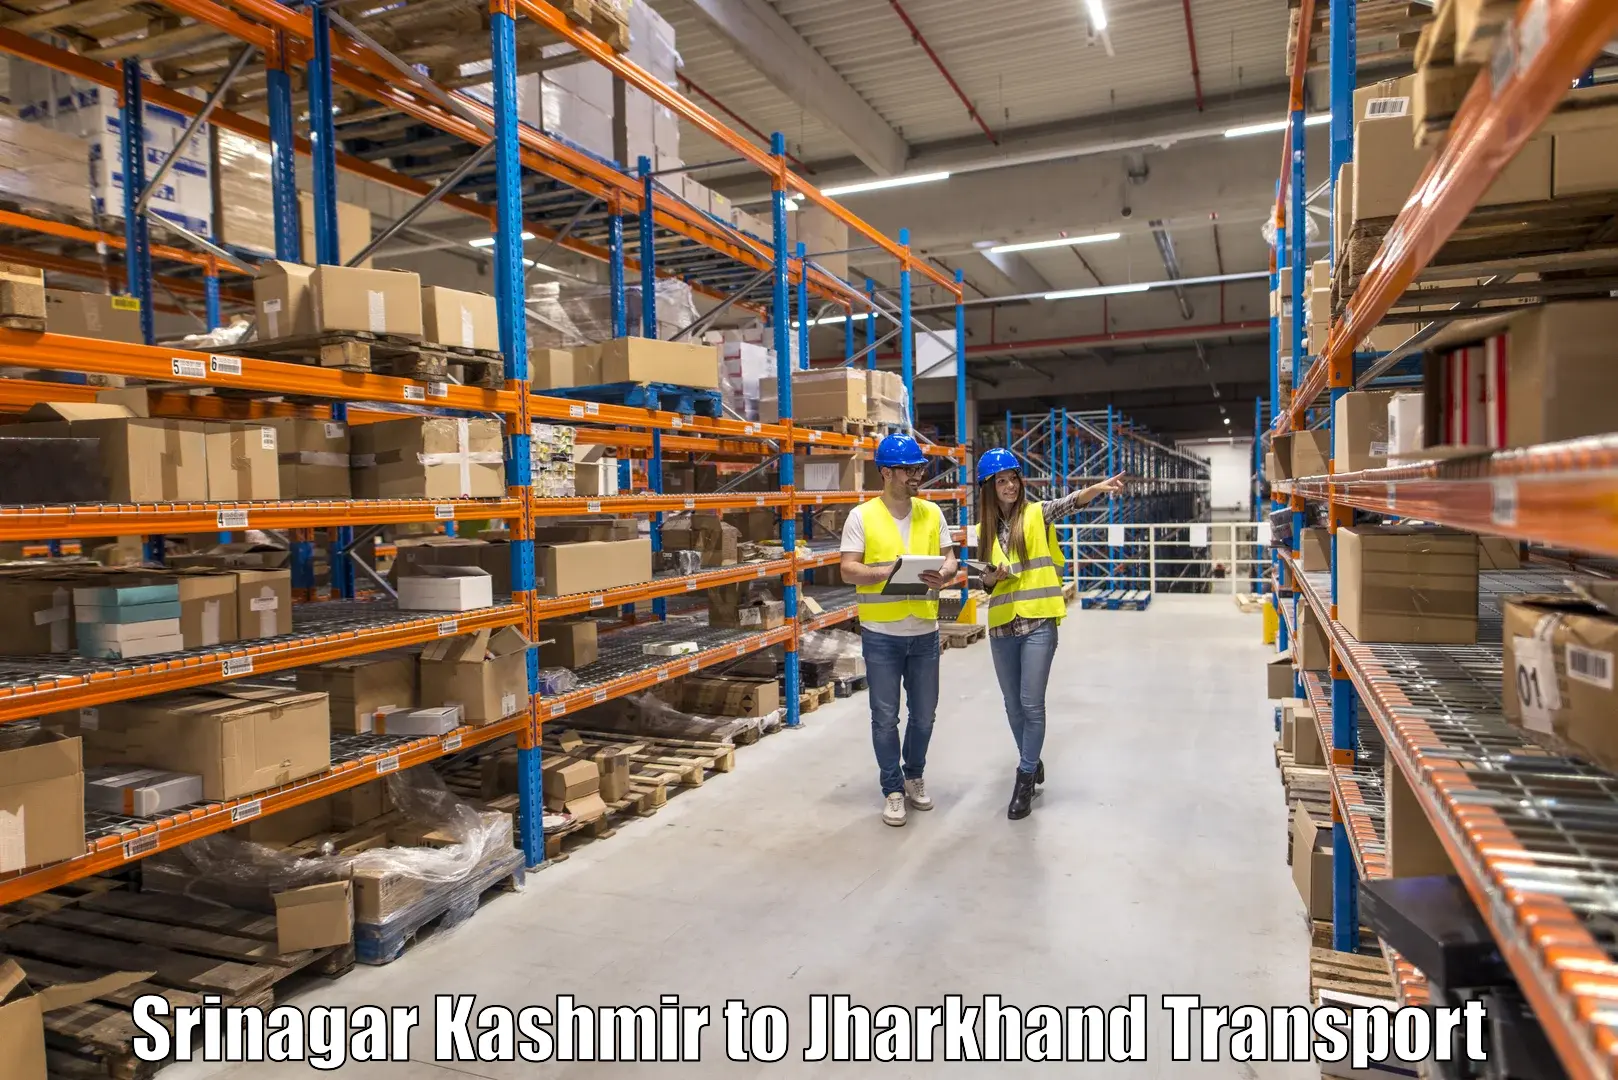 Shipping services Srinagar Kashmir to Barki Saria